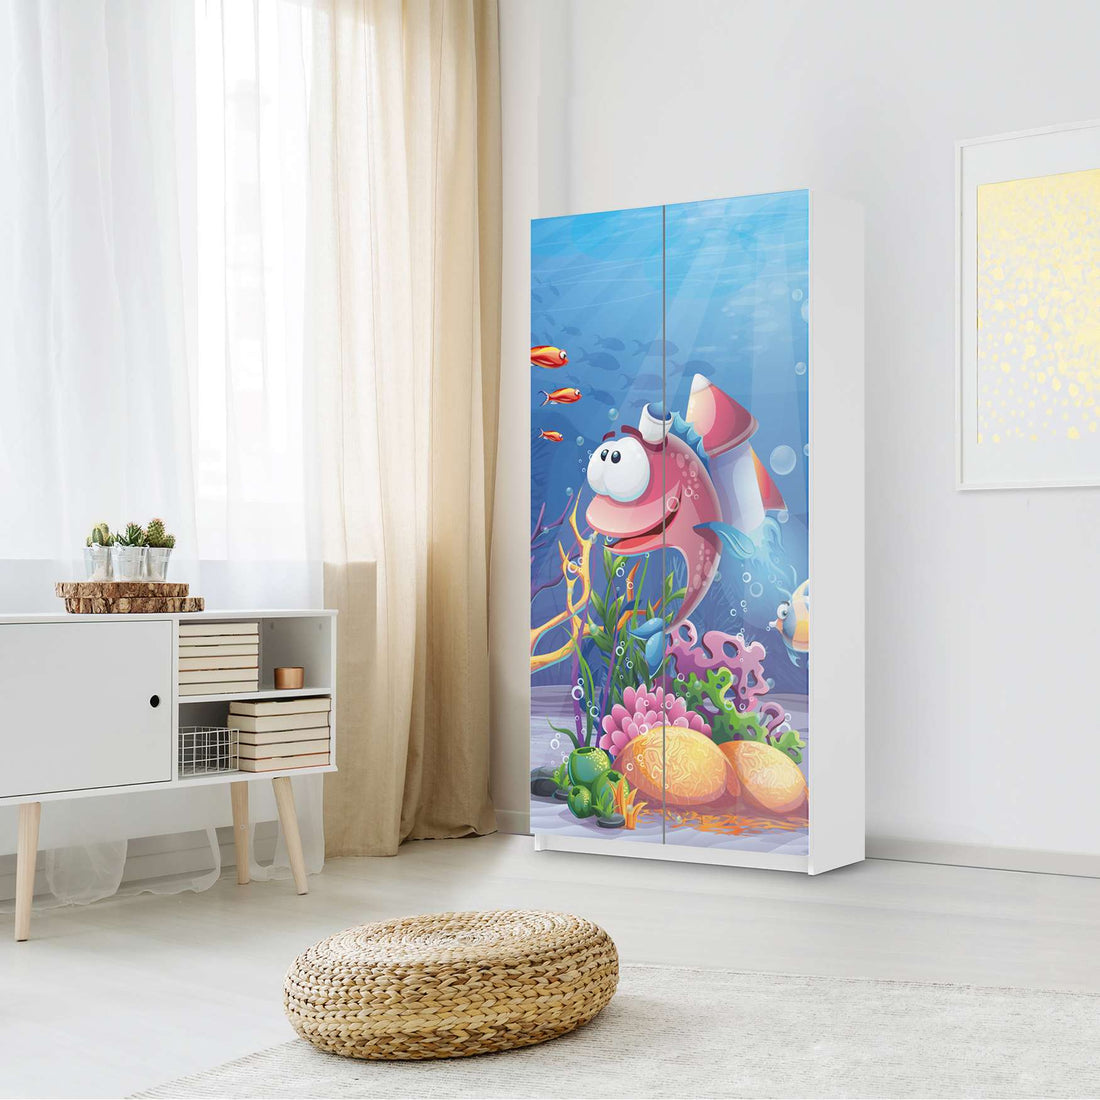 Klebefolie für Möbel Bubbles - IKEA Pax Schrank 201 cm Höhe - 2 Türen - Kinderzimmer